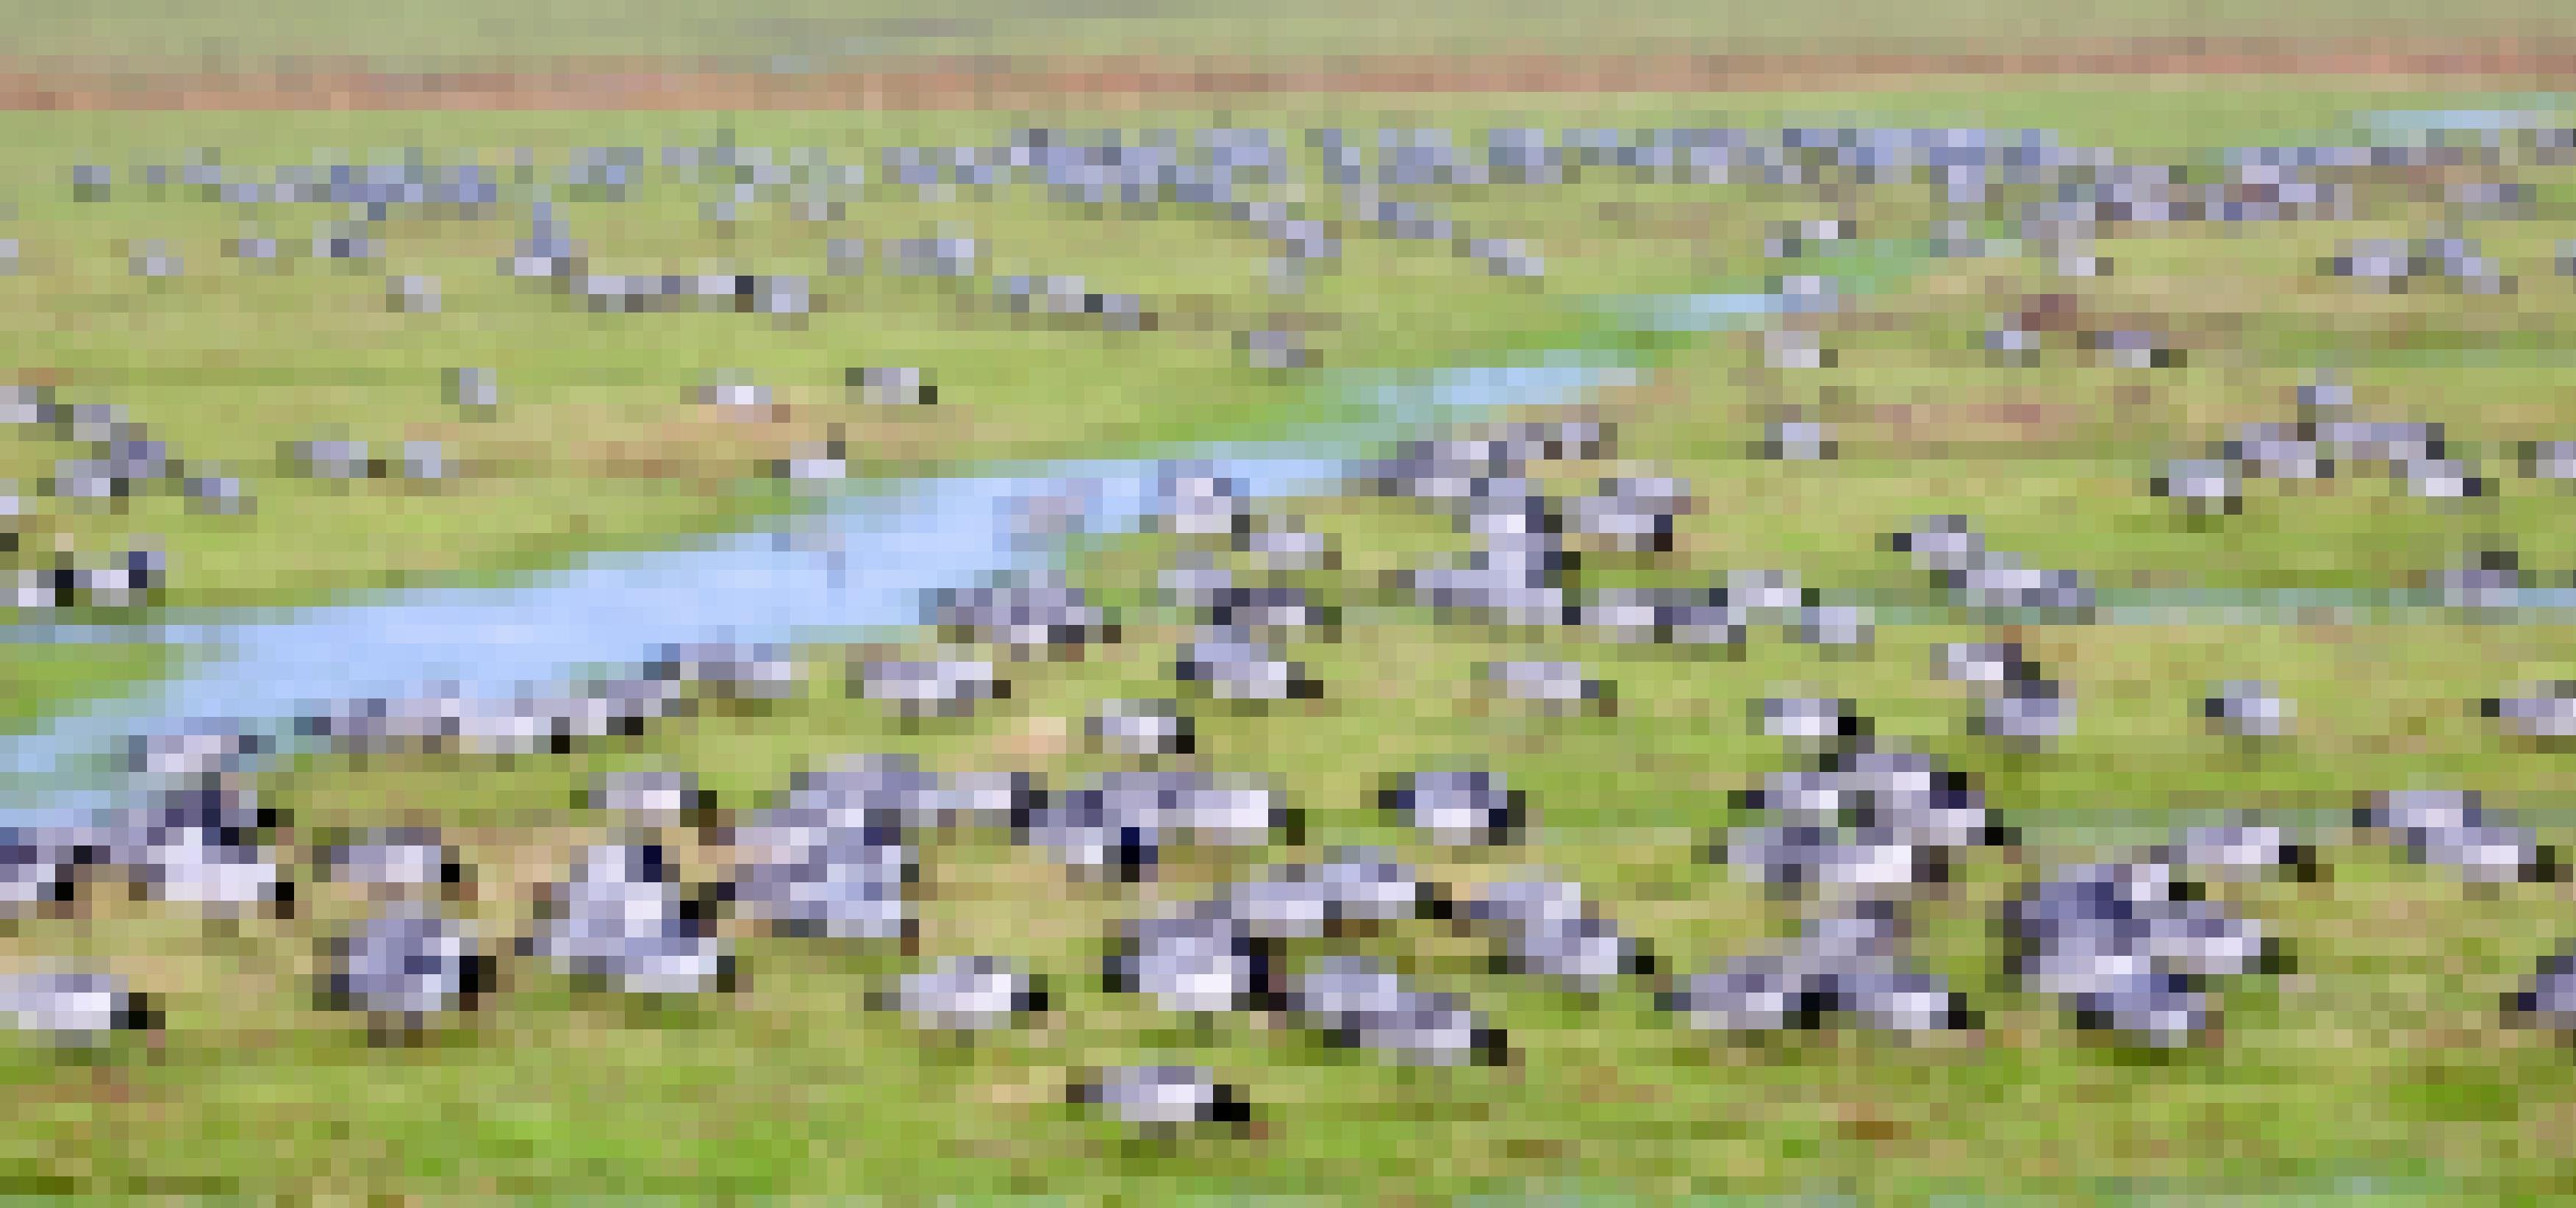 Eine Gruppe Weisswangengänse auf einer Wiese, fotografiert mit langer Belichtungszeit und deshalb verschwommen-abstrakt.